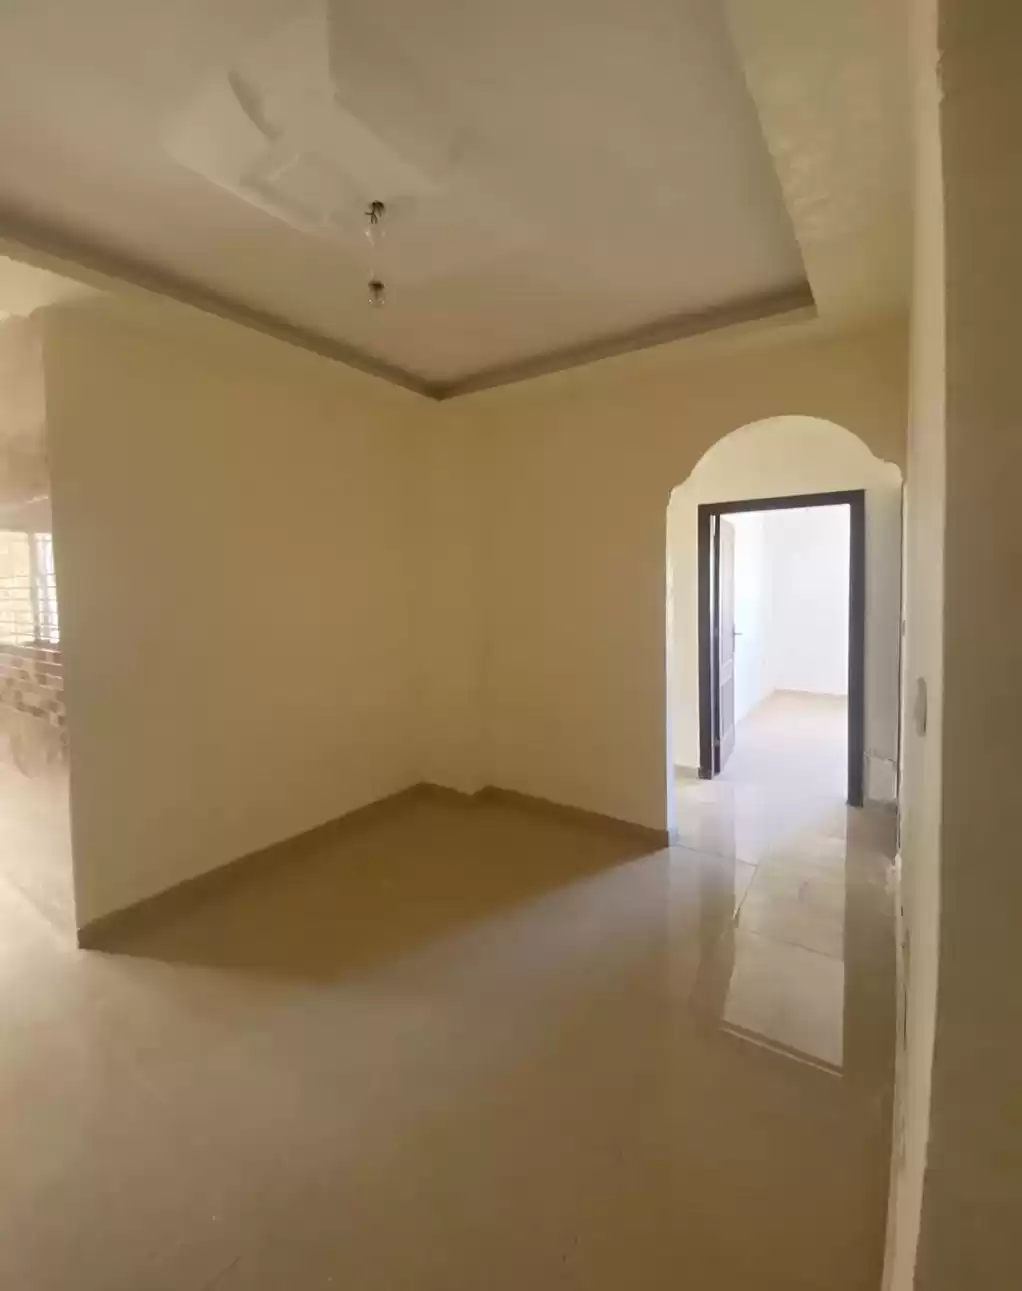 سكني عقار جاهز 3 غرف  غير مفروش شقة  للإيجار في عمان #26471 - 1  صورة 